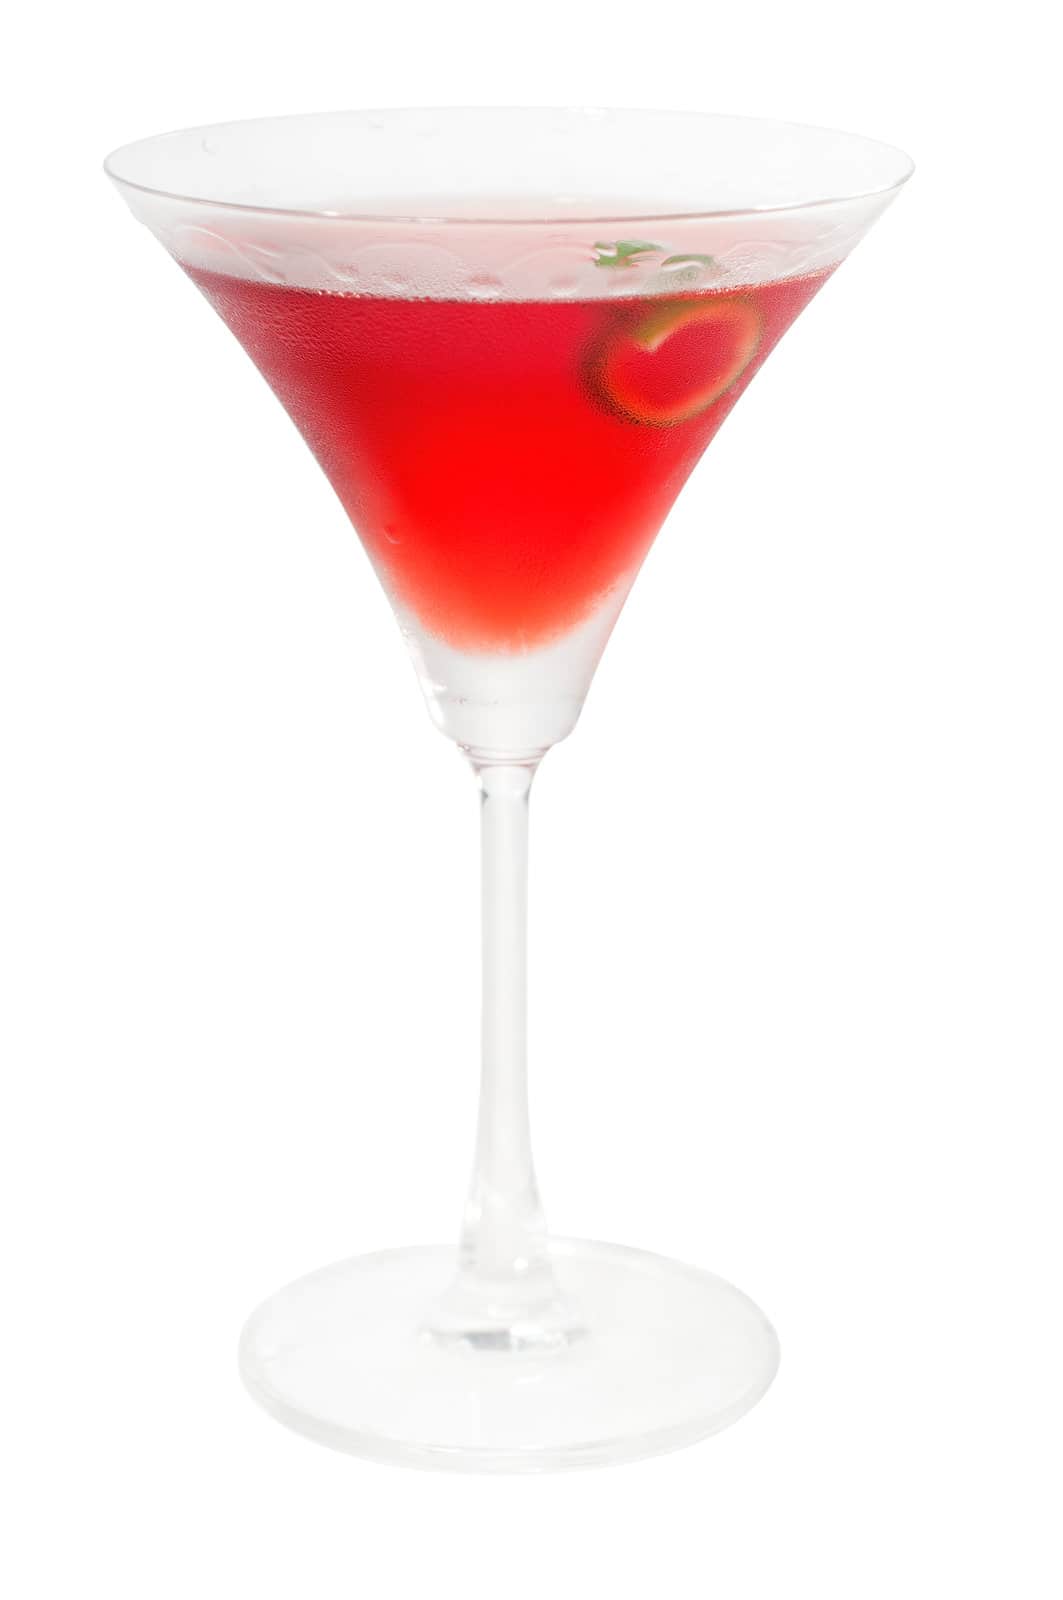 Union Jack cocktail